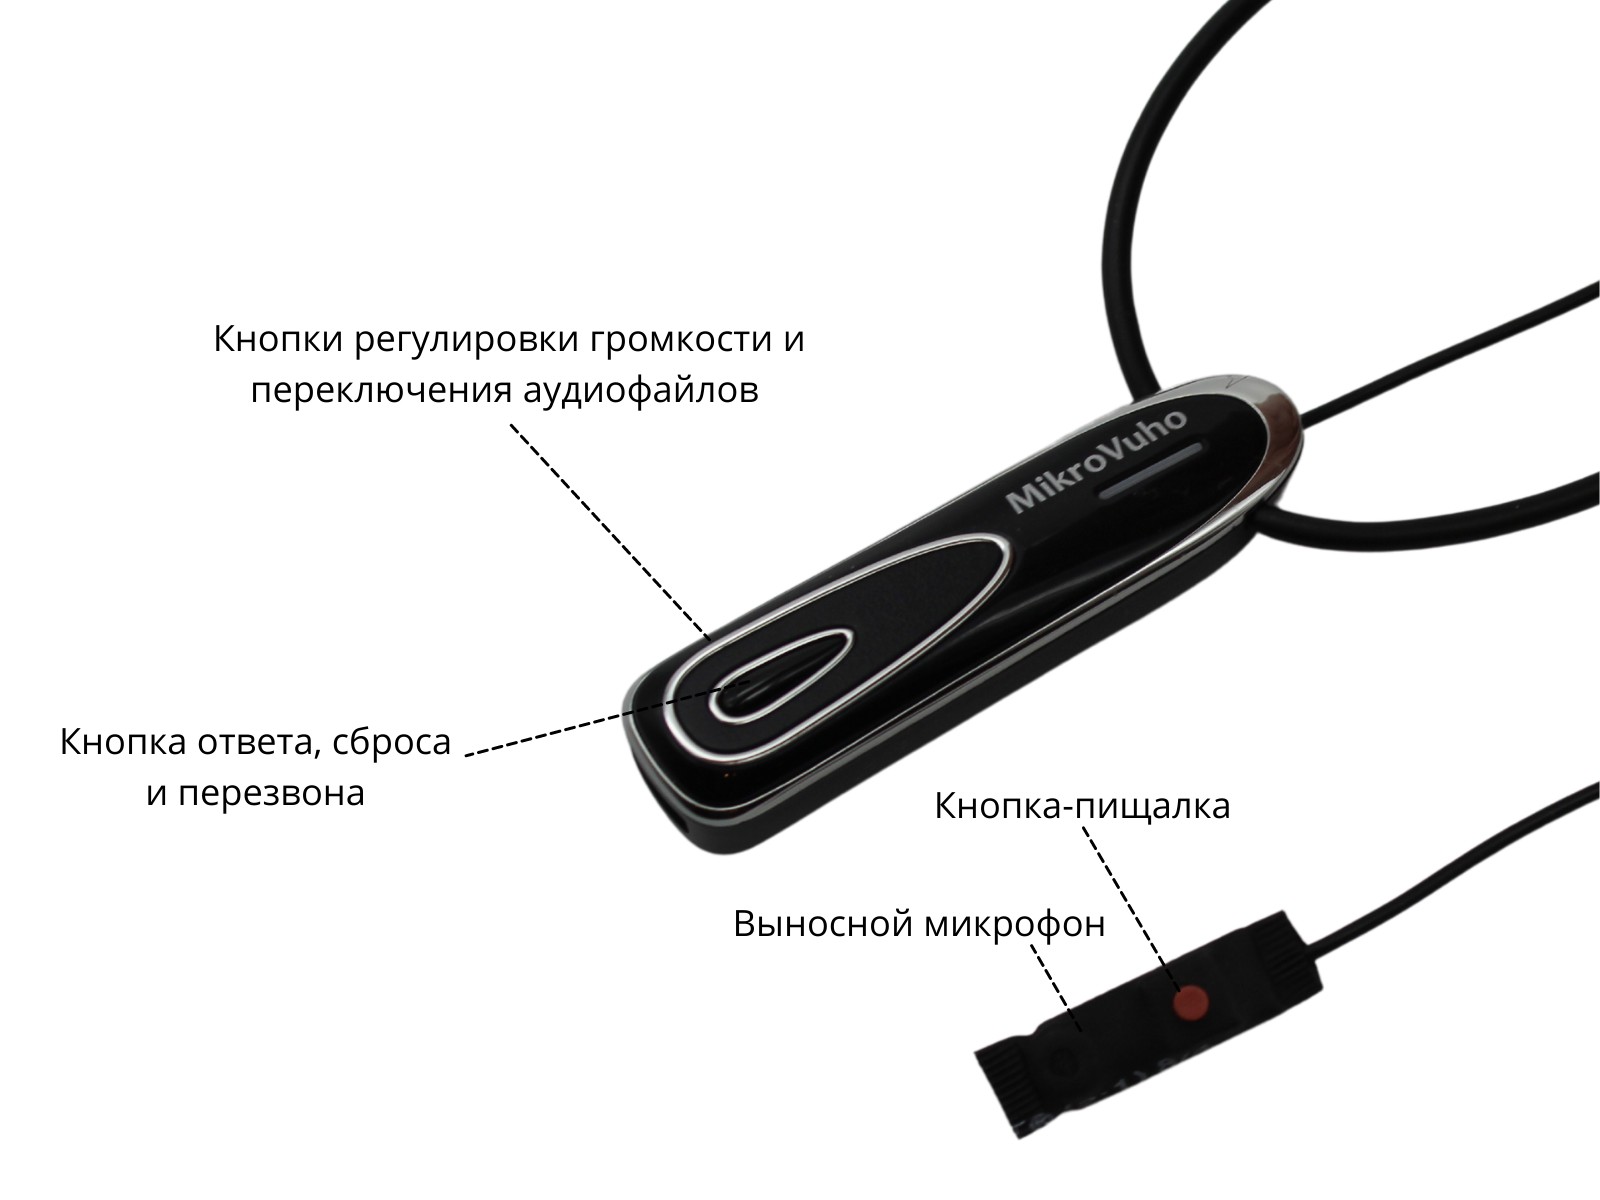 Универсальная гарнитура Bluetooth Premier с капсулой К5 4 мм и магнитами 2 мм - изображение 18